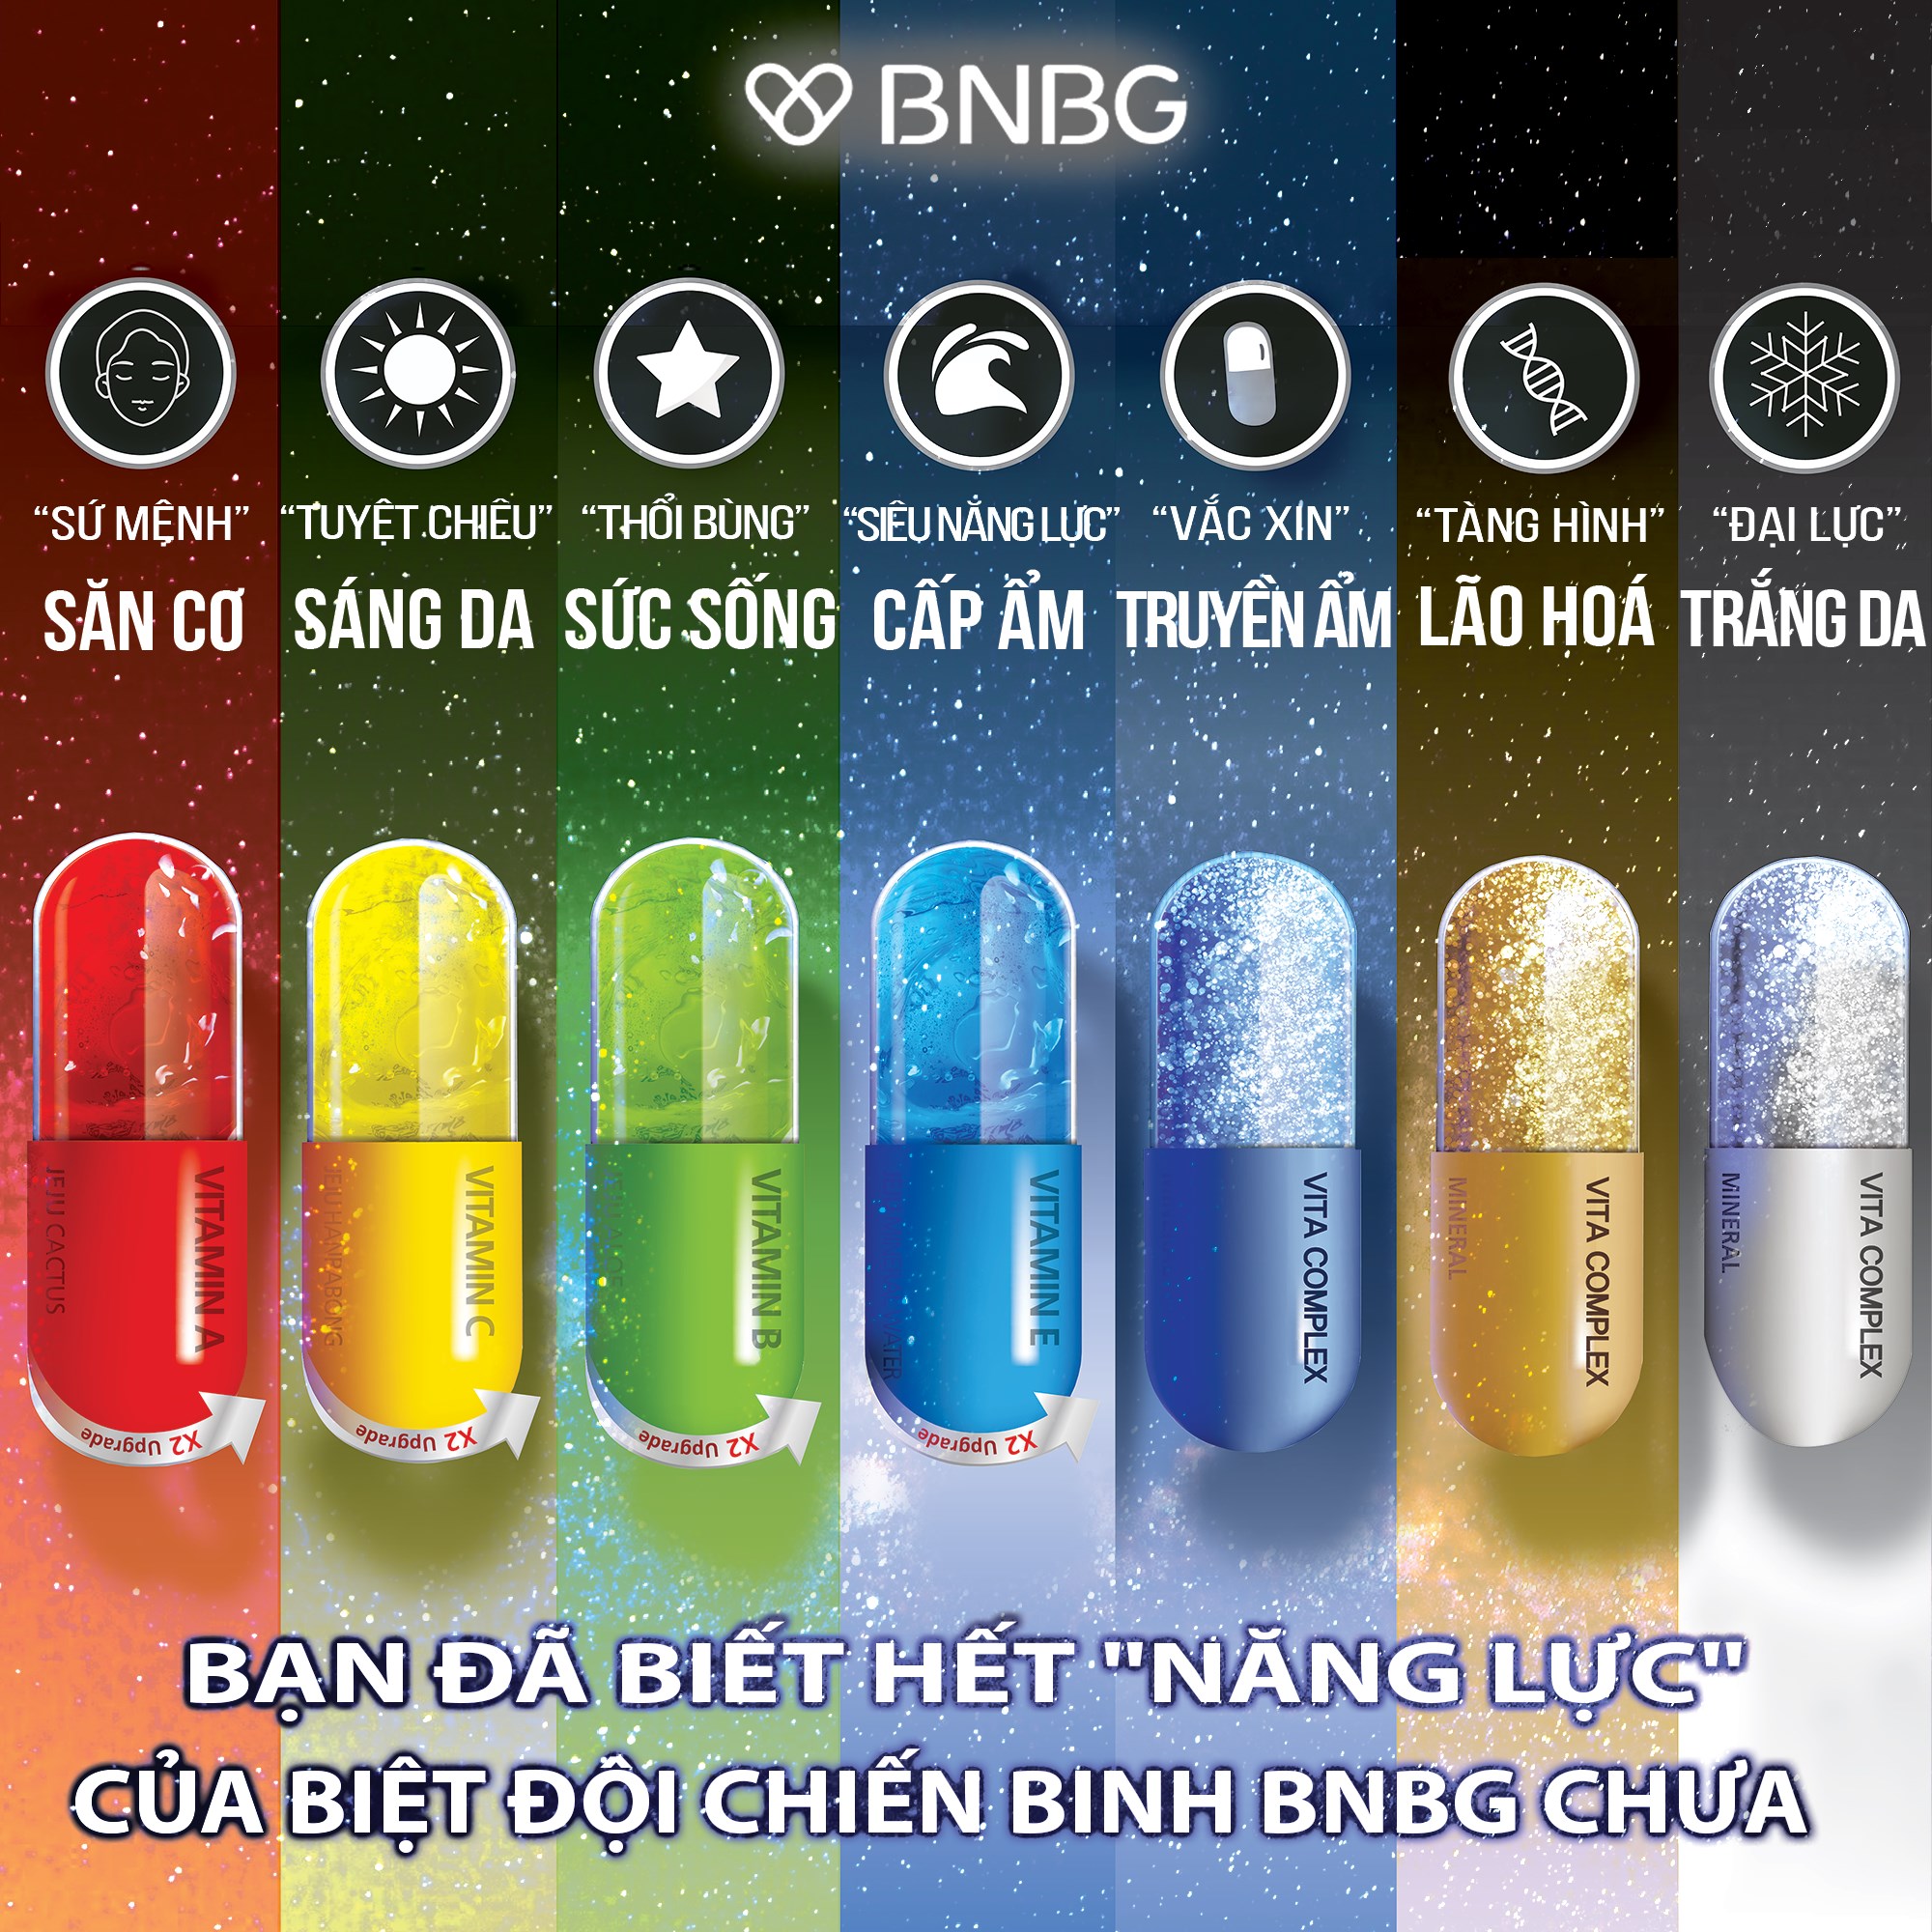 Mặt Nạ Miếng Dưỡng Ẩm, Dưỡng Trắng, Giảm Mụn, Phục Hồi Da Hàn Quốc BNBG (Vitamin A,B,C,E,Trà Xanh)